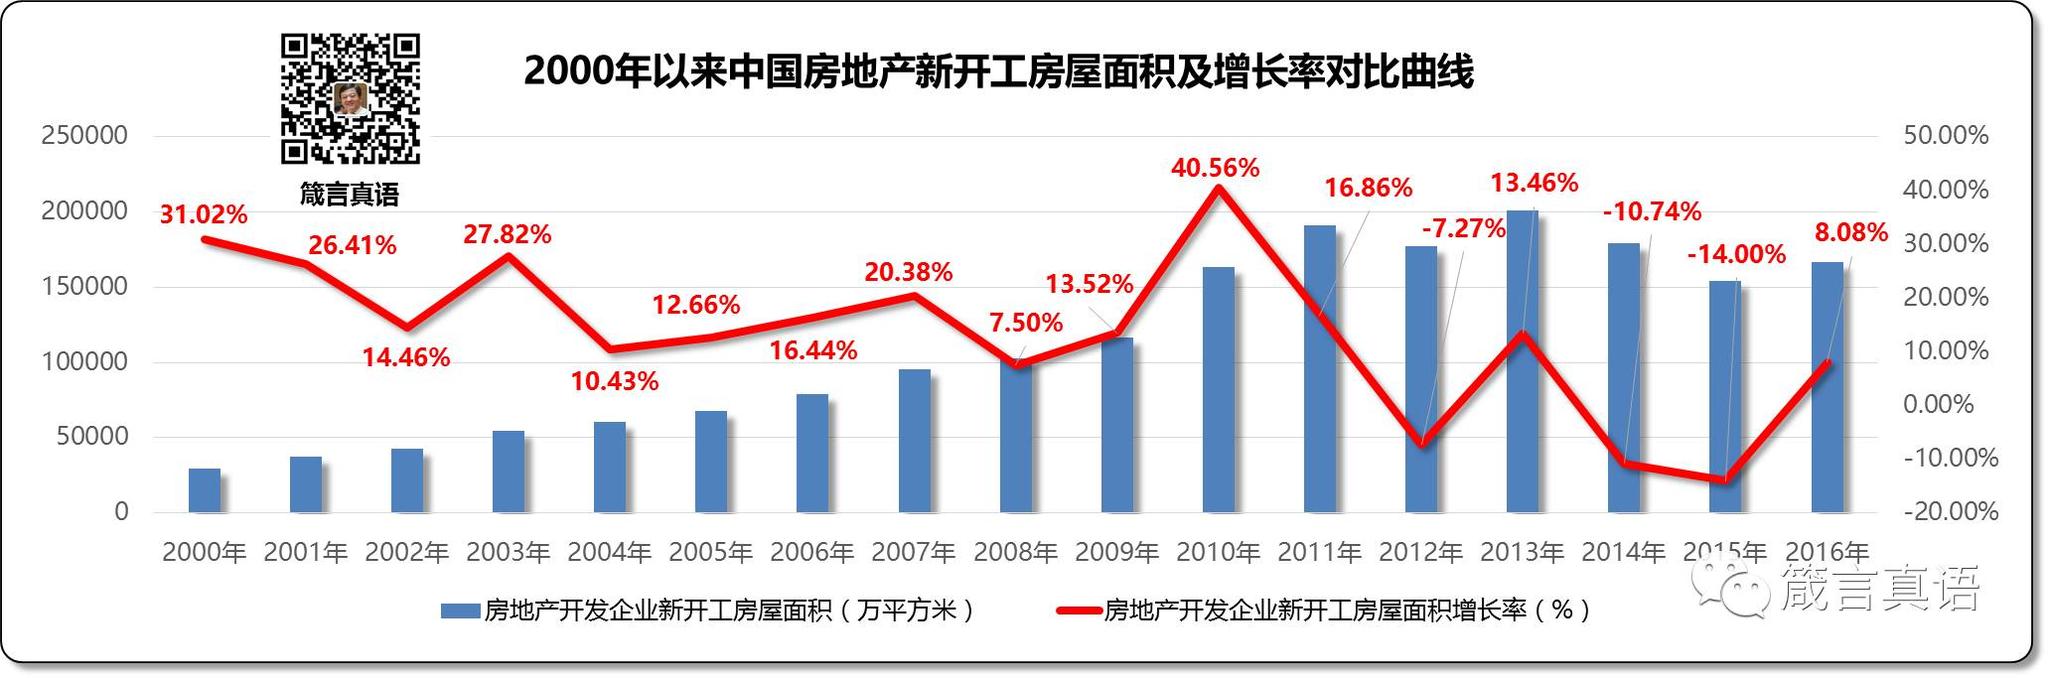 2000年以来中国房地产新开工房屋面积及增长率对比曲线